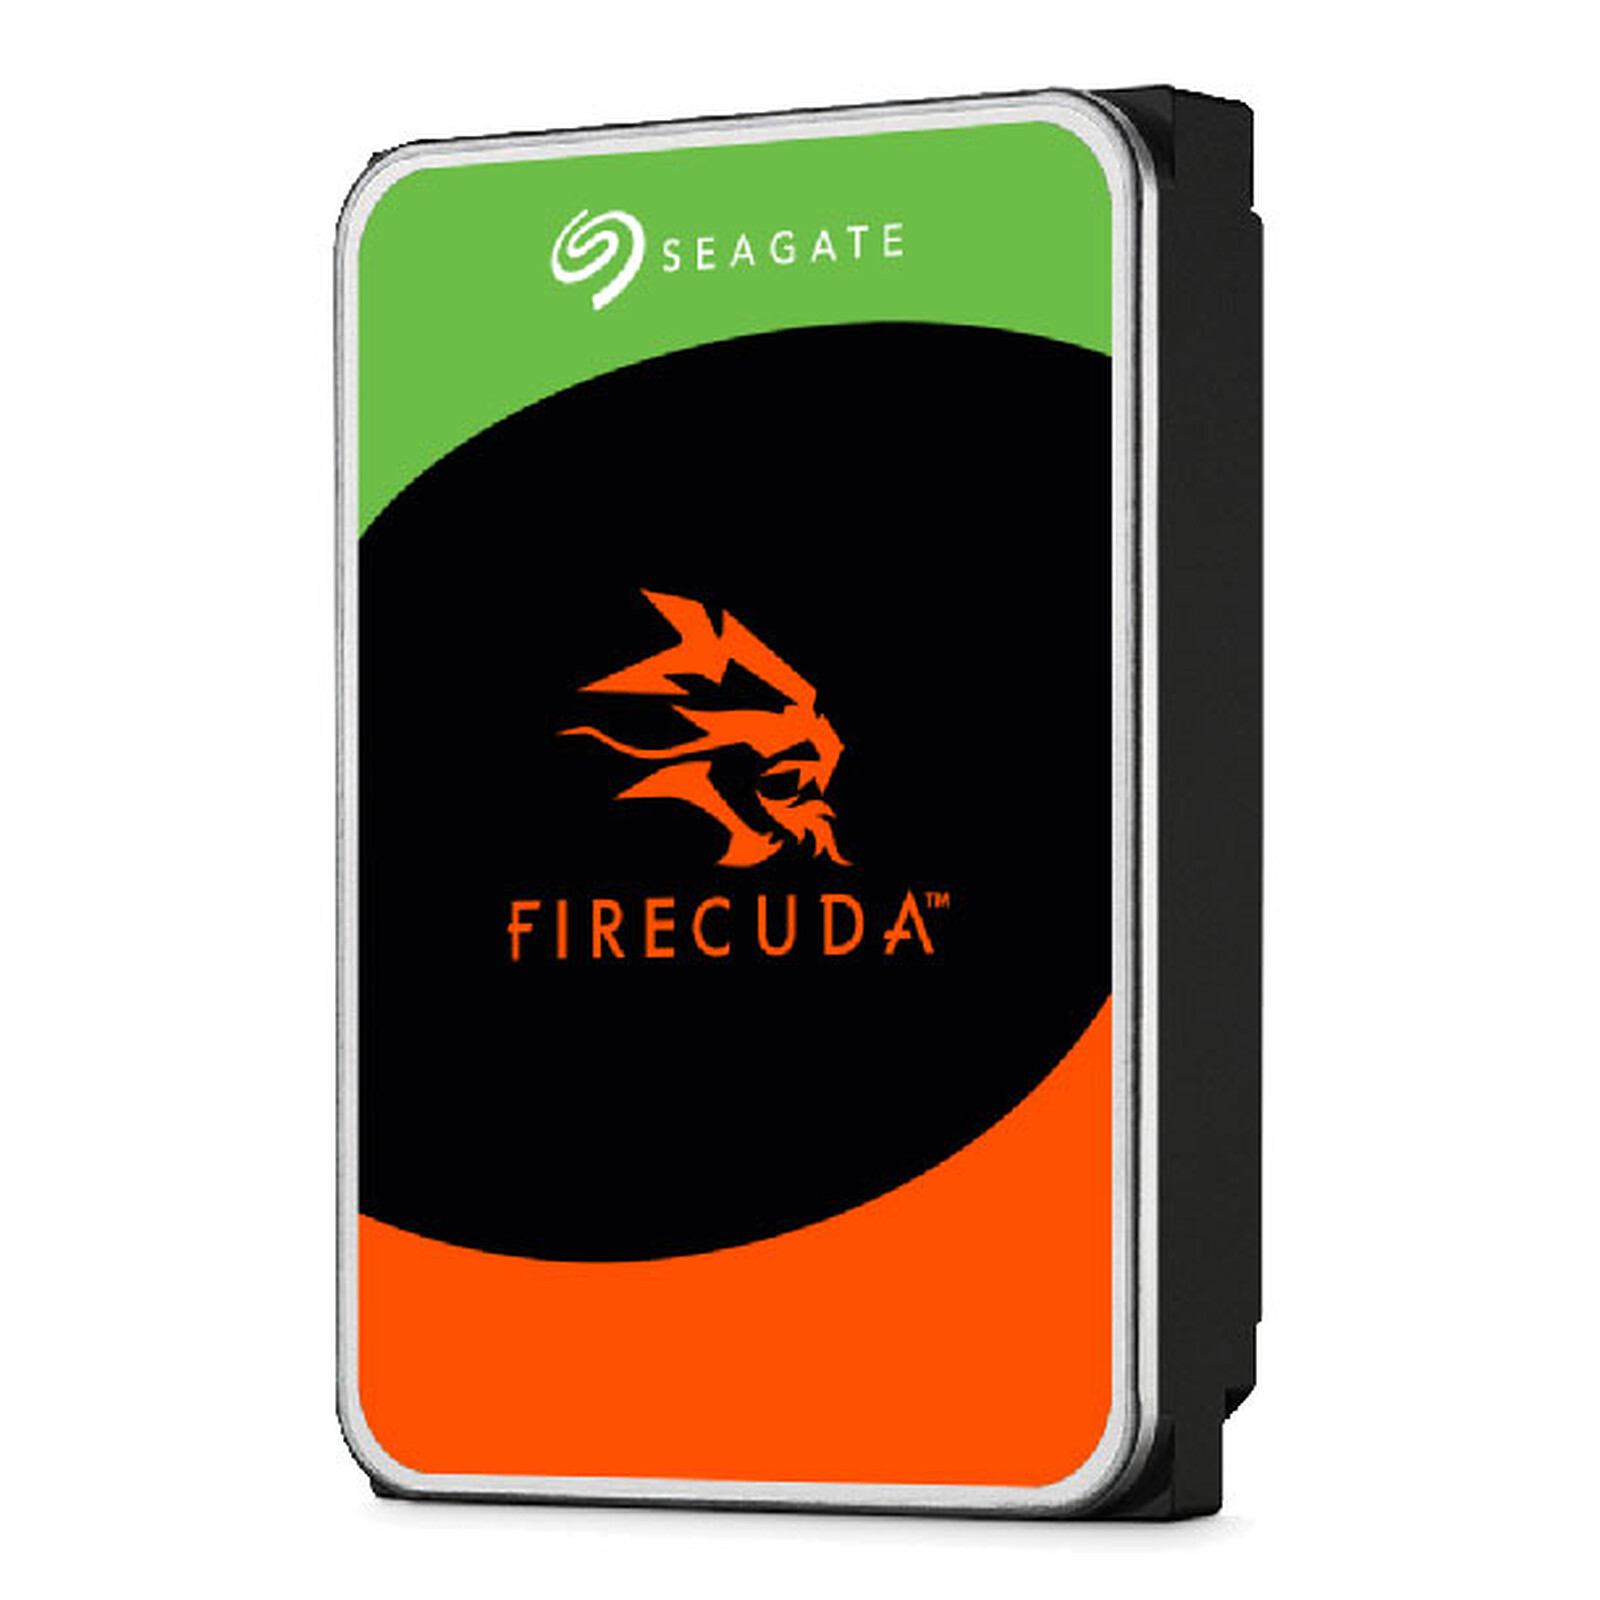 Seagate Firecuda 4Tb - Internal hard drive - LDLC 3-year warranty